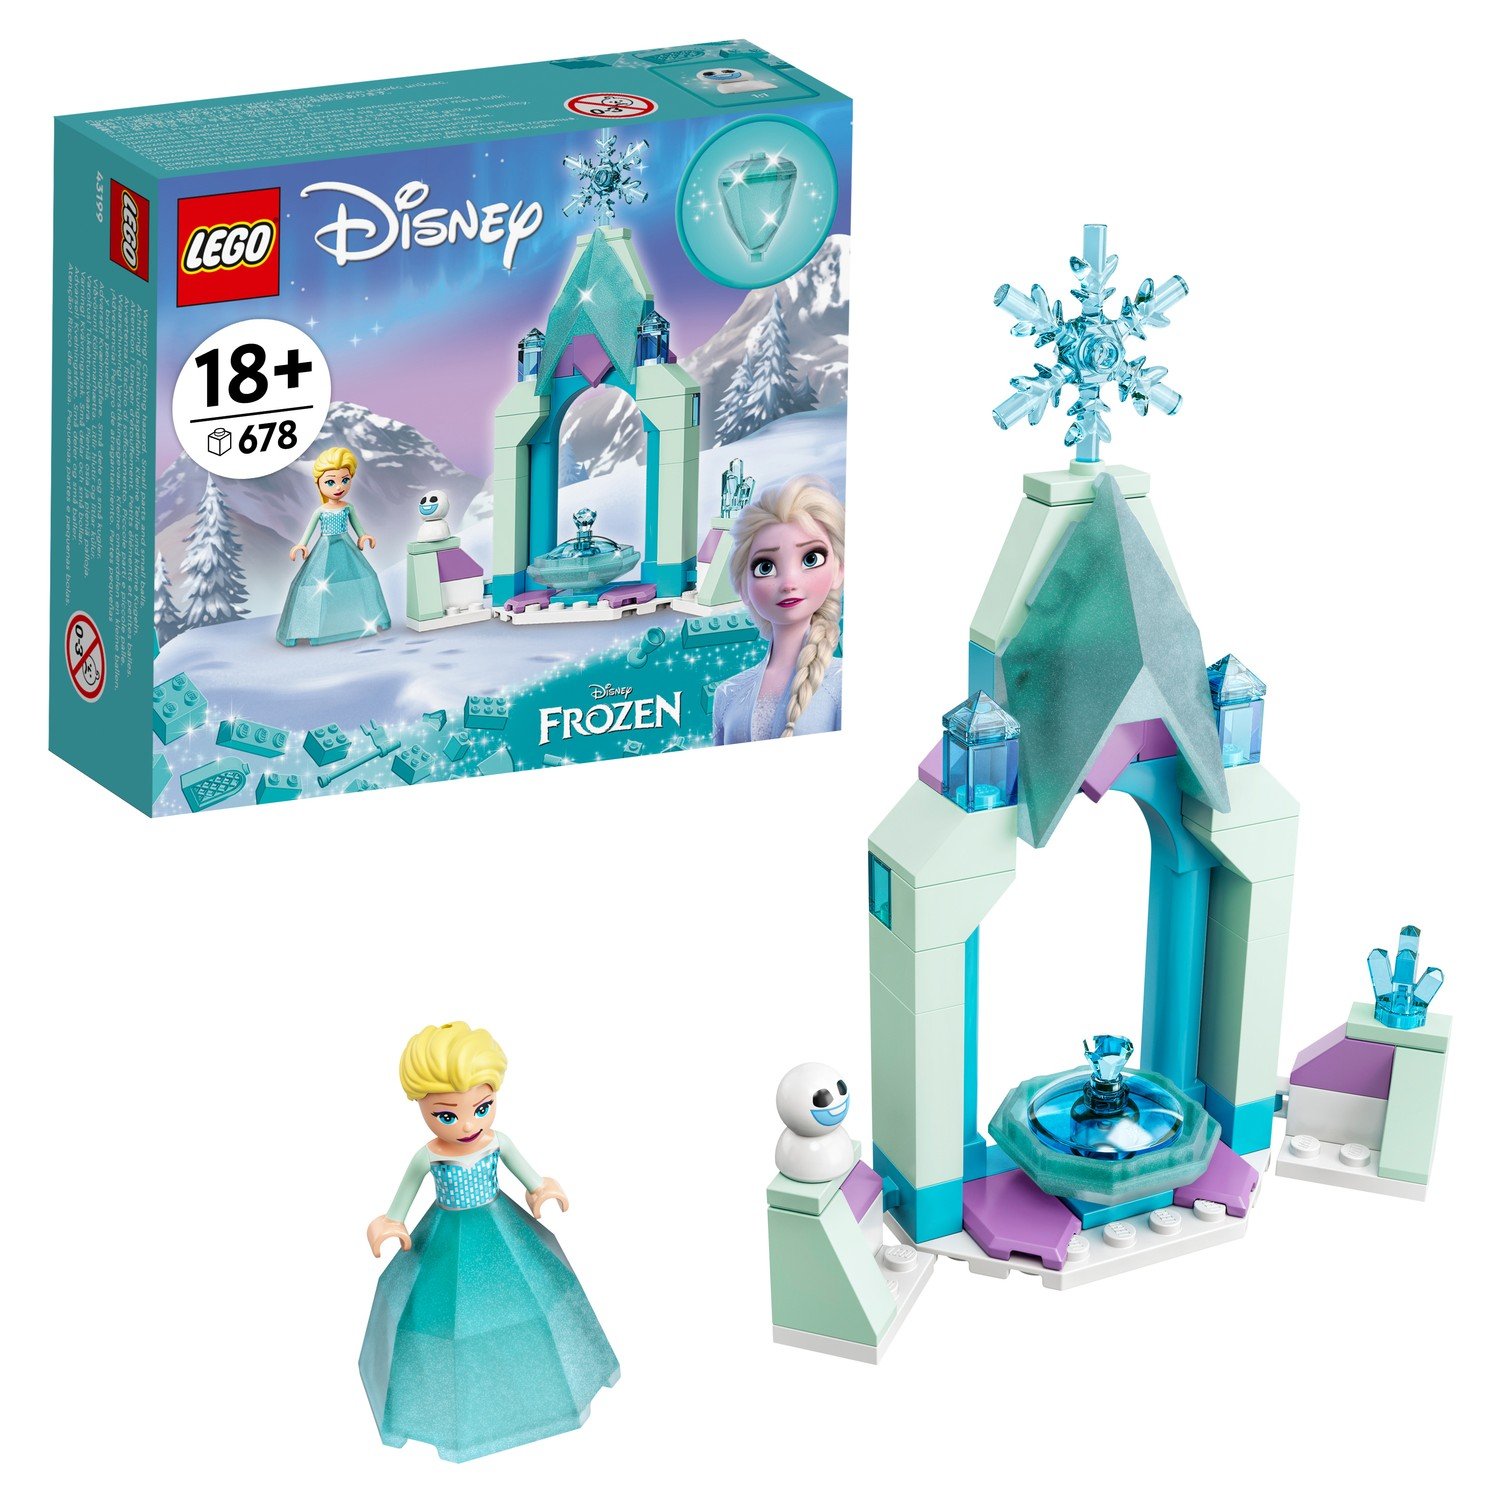 LEGO Disney Princess Frozen Двор замка Эльзы 43199 конструктор lego disney frozen ii 41165 экспедиция анны на каноэ